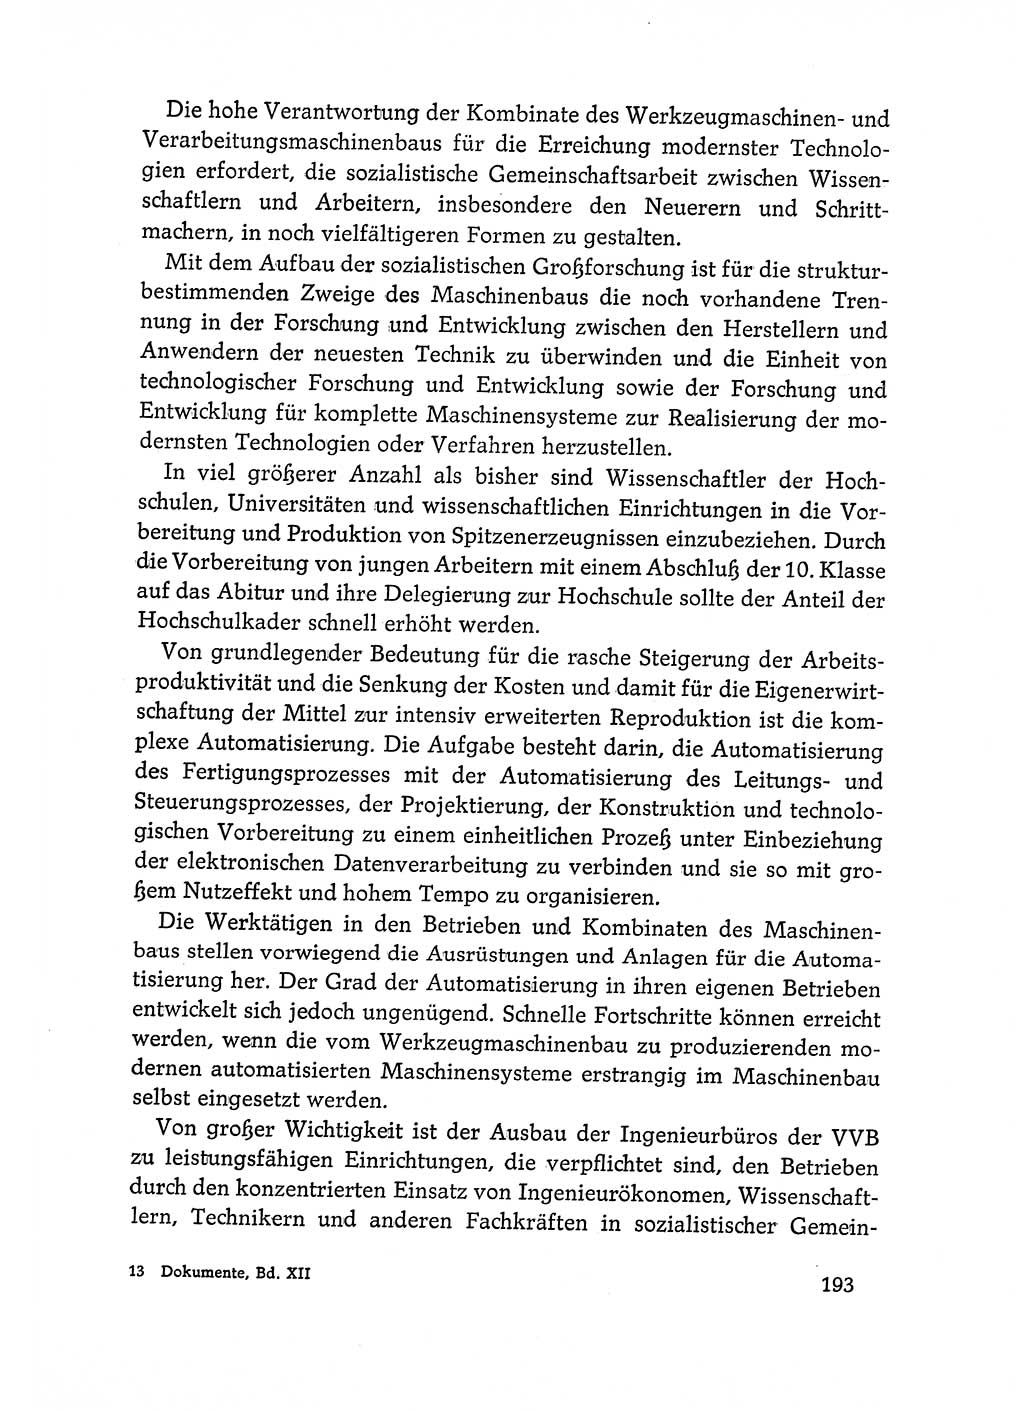 Dokumente der Sozialistischen Einheitspartei Deutschlands (SED) [Deutsche Demokratische Republik (DDR)] 1968-1969, Seite 193 (Dok. SED DDR 1968-1969, S. 193)